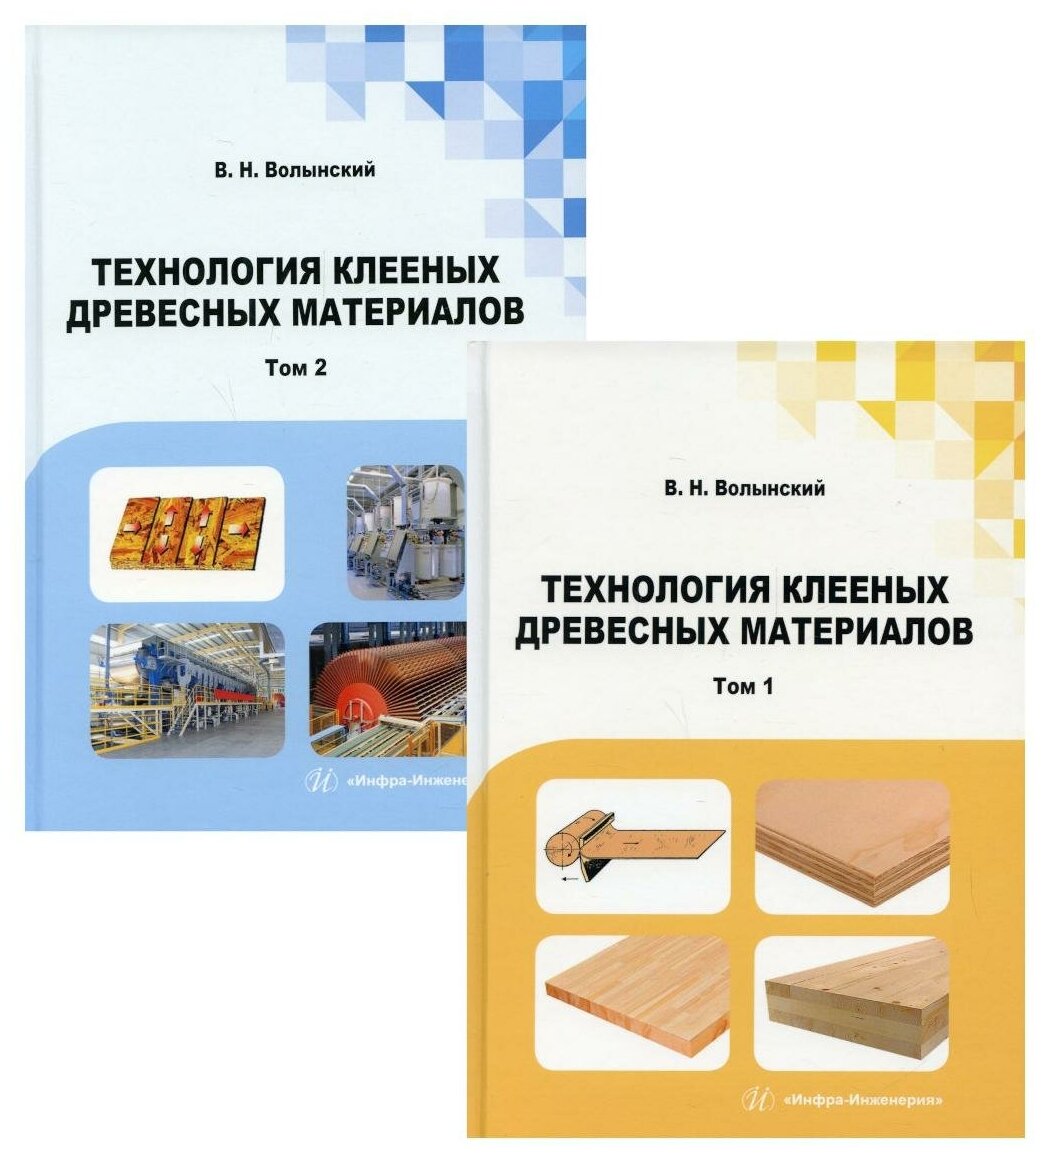 Технология клееных древесных материалов. Комплект в 2-х томах - фото №1